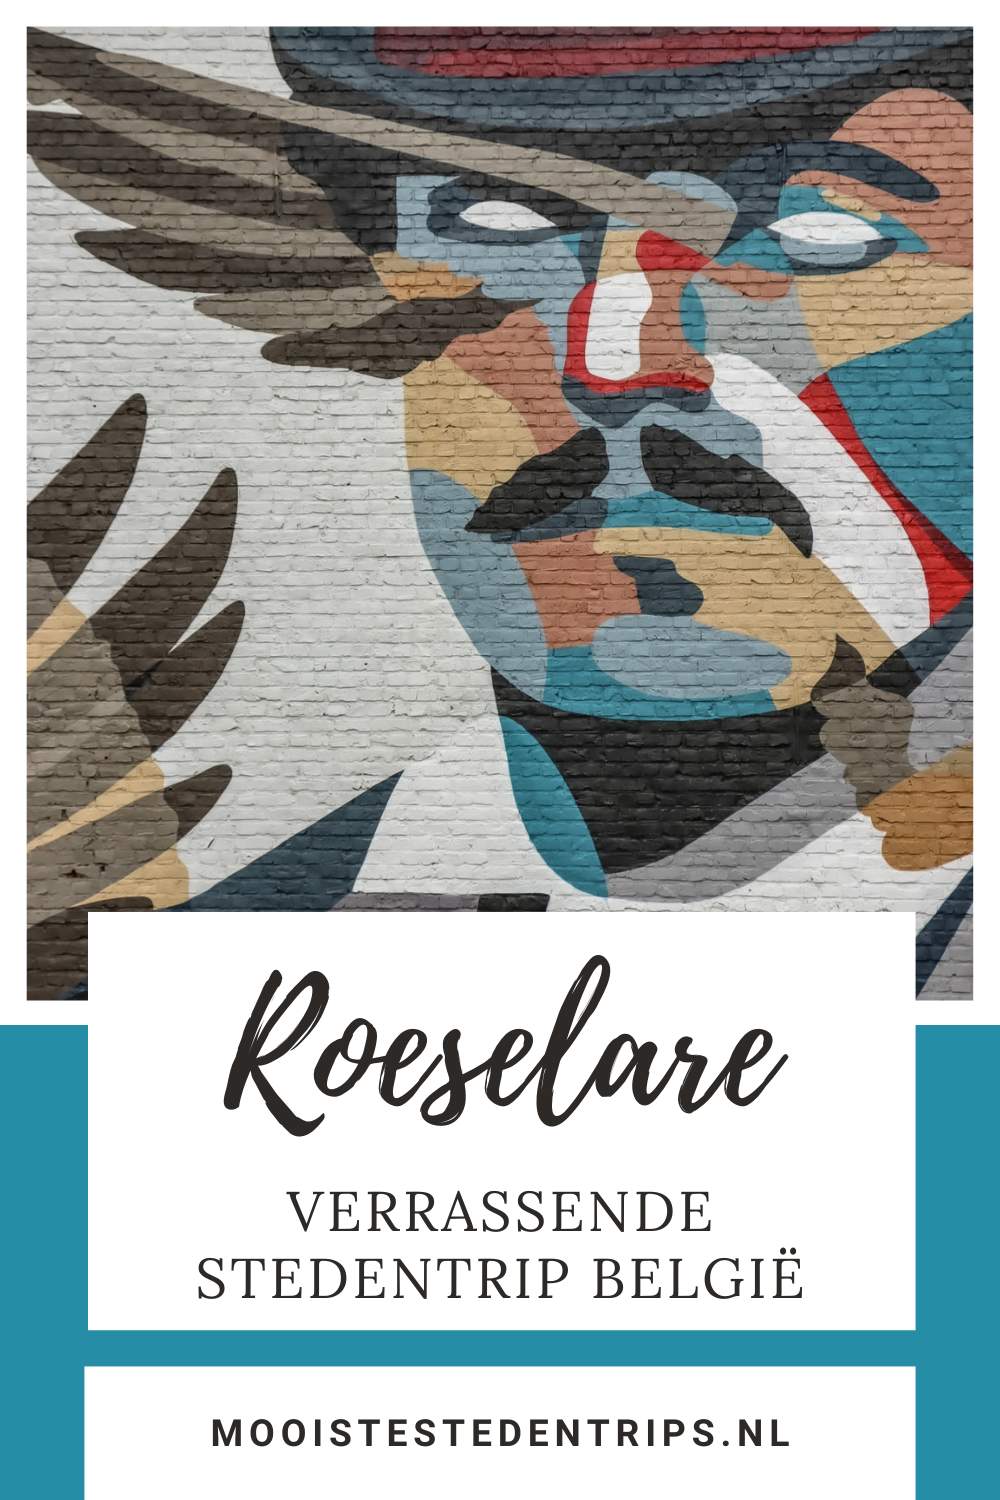 Roeselare, België: ontdek alle verrassende bezienswaardigheden in Roeselare | Mooistestedentrips.nl